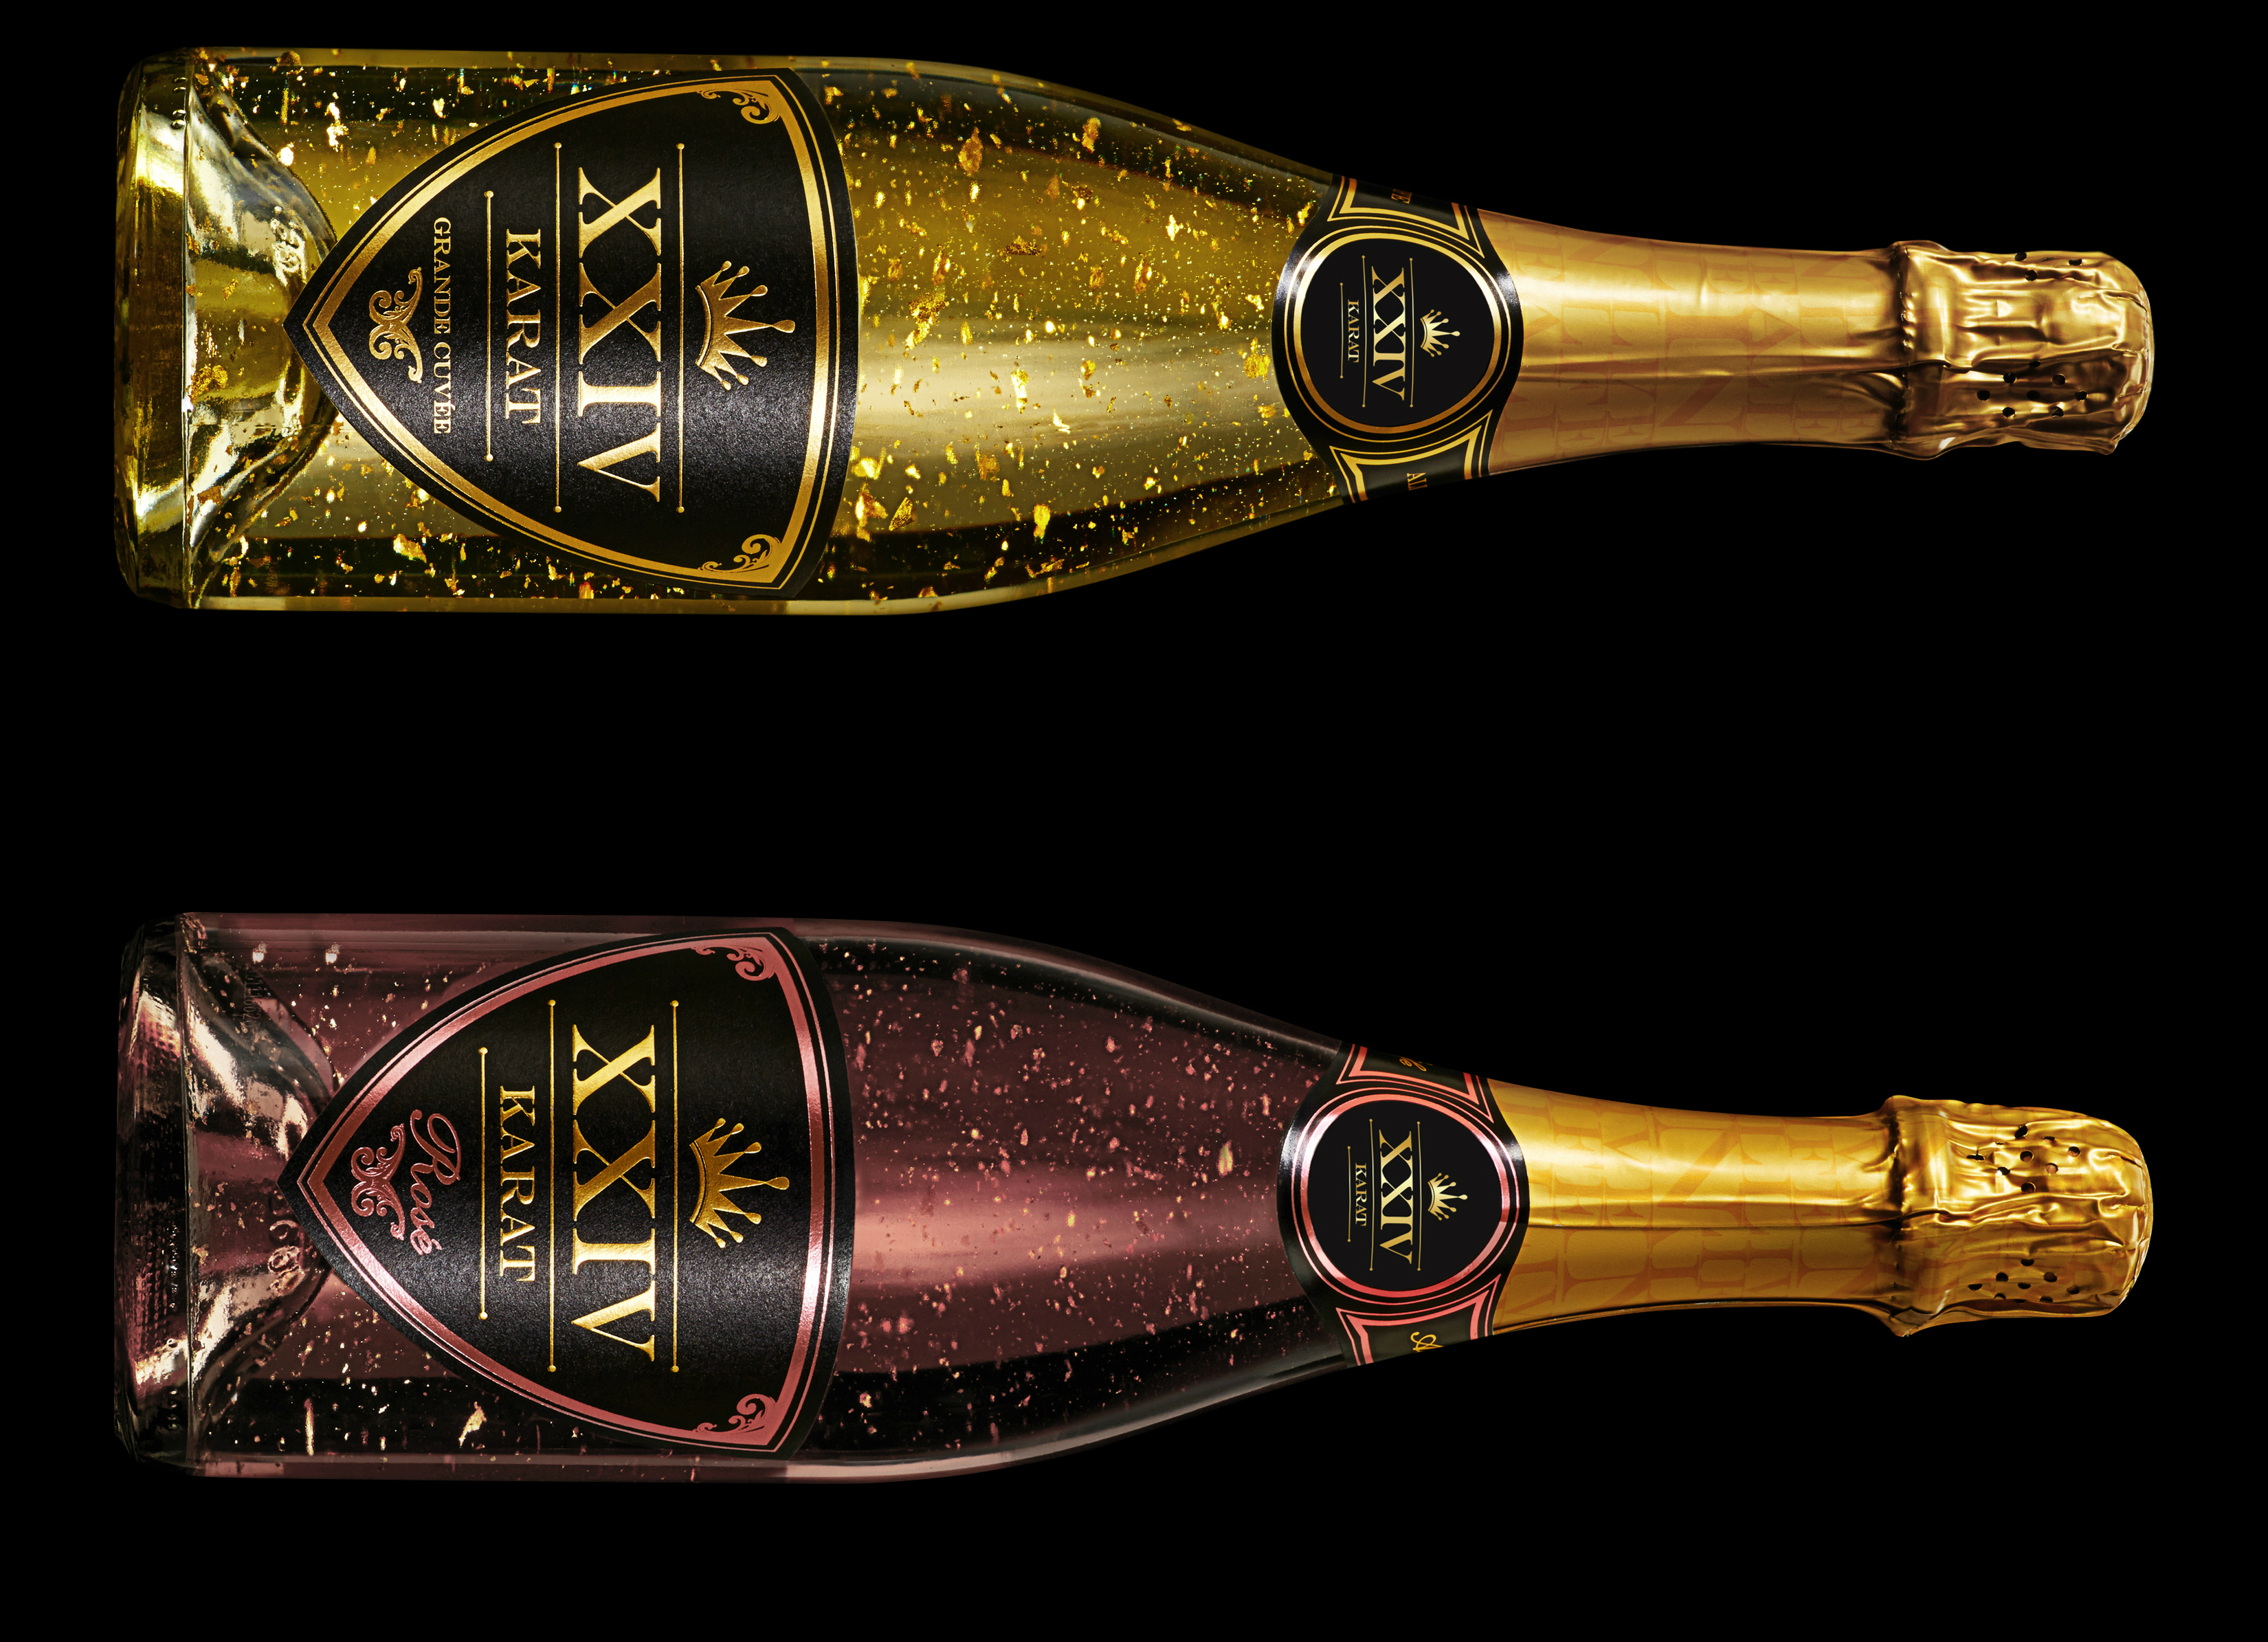 Шампанское т. Золотистая бутылка шампанского. Шардоне вино Chardonnay vino Spumante. Брют бутылка с головой лошади. Pommery 1989 шампанское.